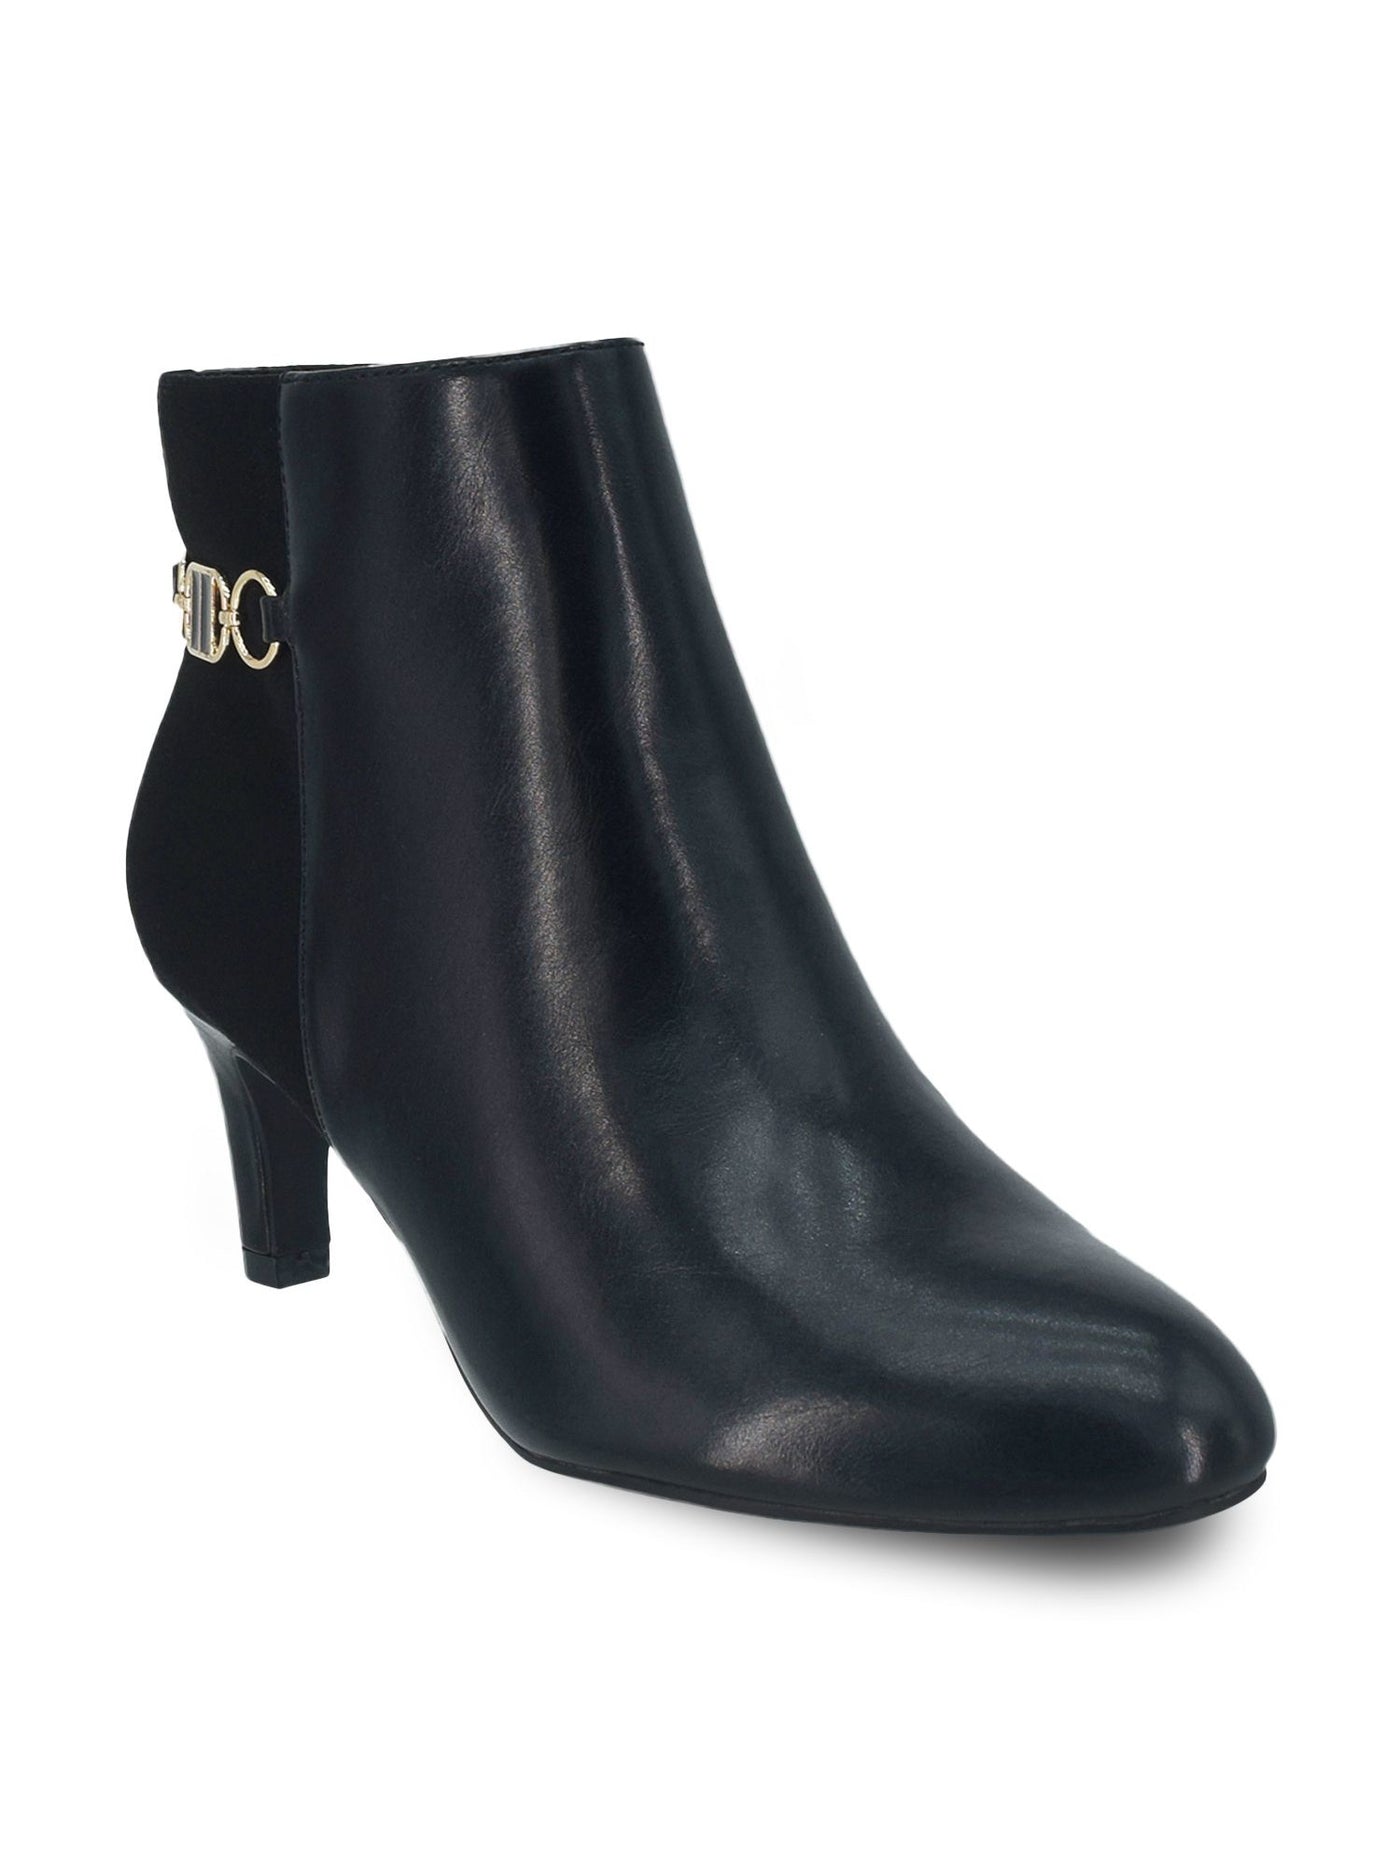 IMPO Womens Black Chain Neena Round Toe Kitten Heel Zip-Up Heeled Boots 10 W